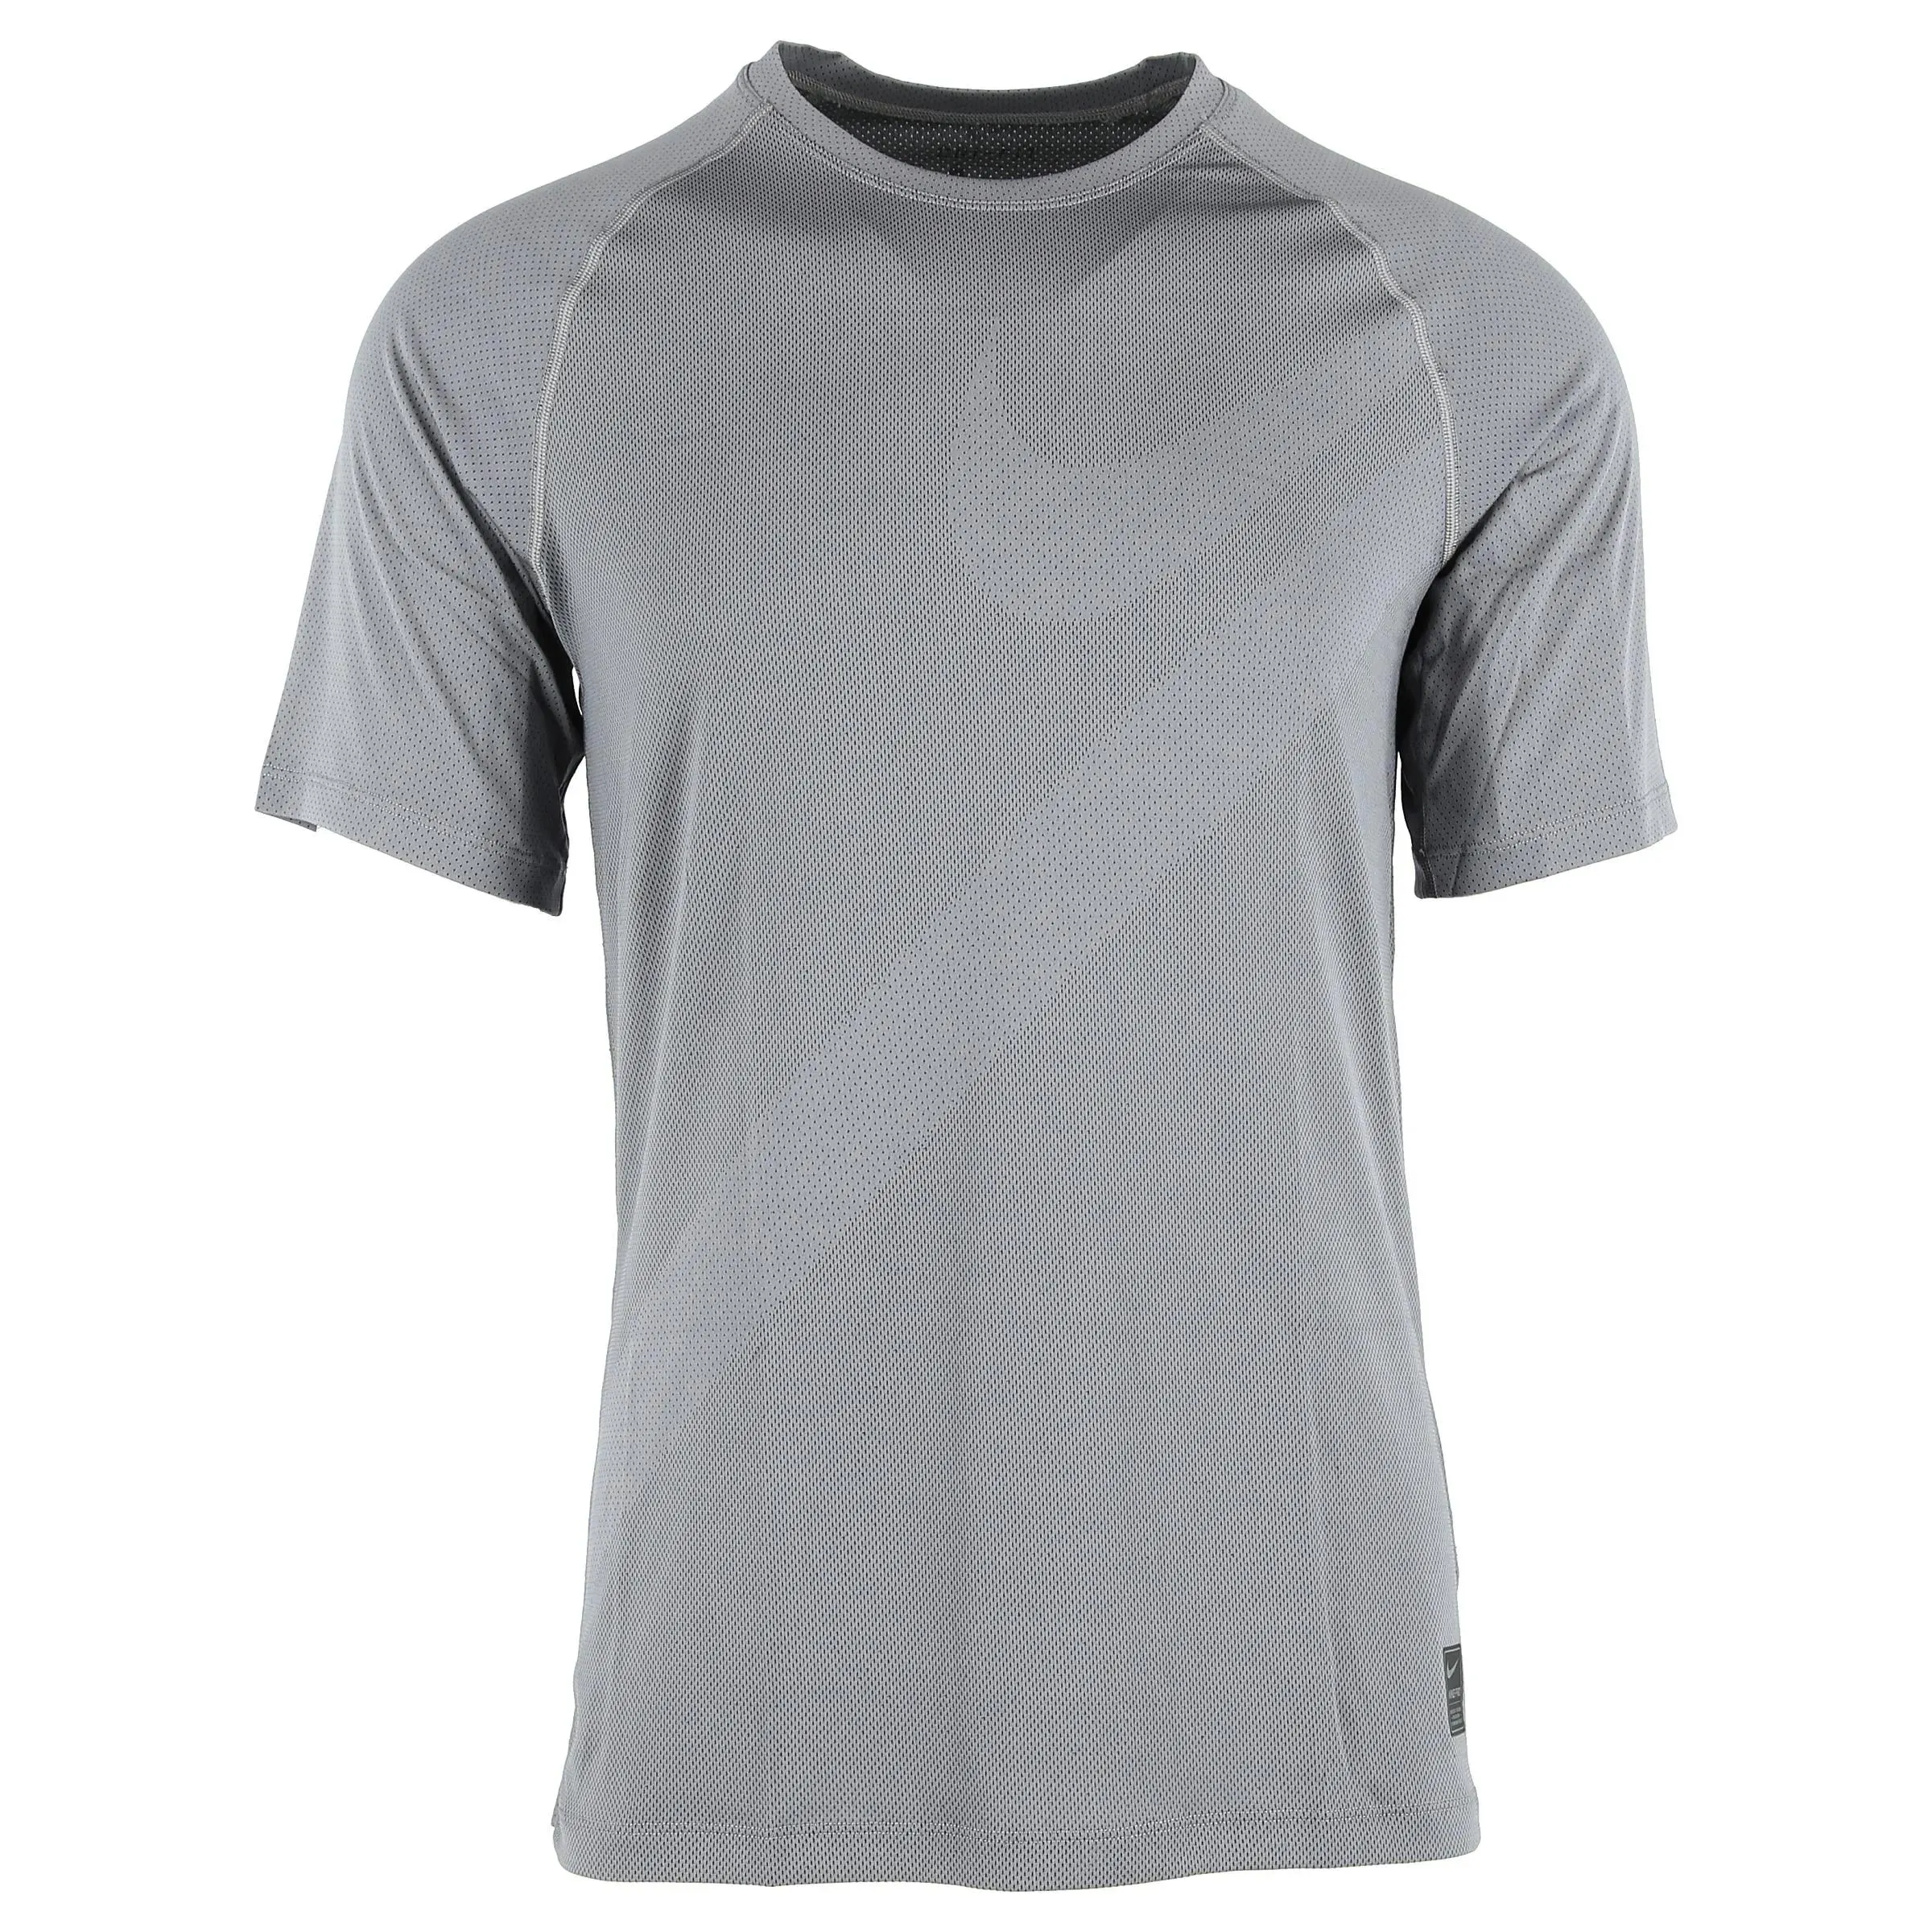 Nike T-shirt M NP TOP SS HBR 2 